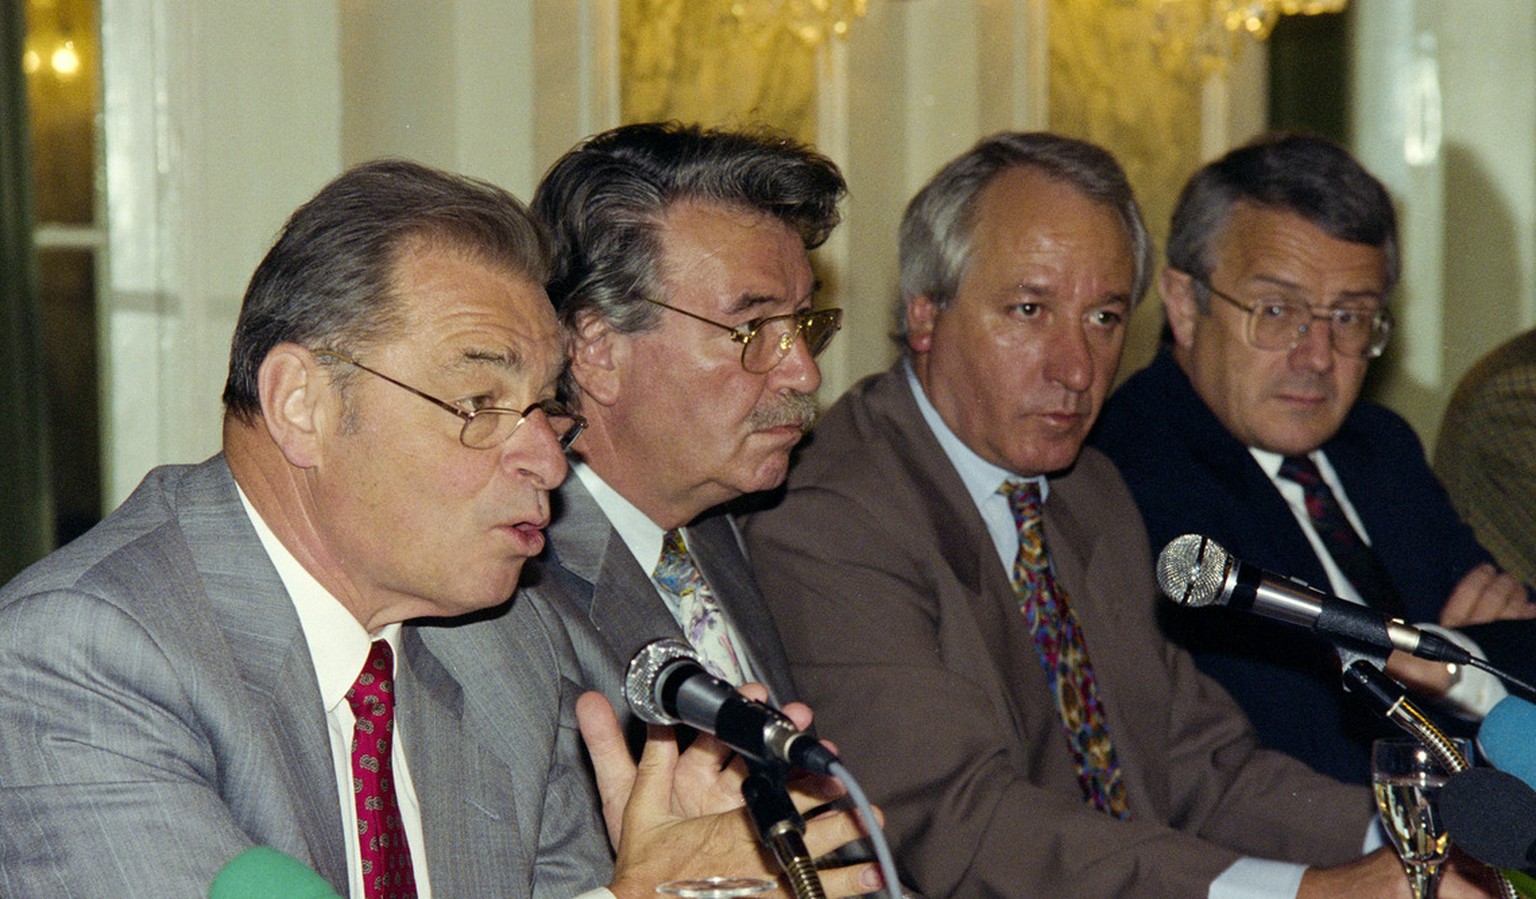 Am 20. Mai 1992 informierten die Bundesräte Jean-Pascal Delamuraz, René Felber und Arnold Koller sowie Vizekanzler Achille Casanova (2. von rechts) offiziell über das Gesuch.